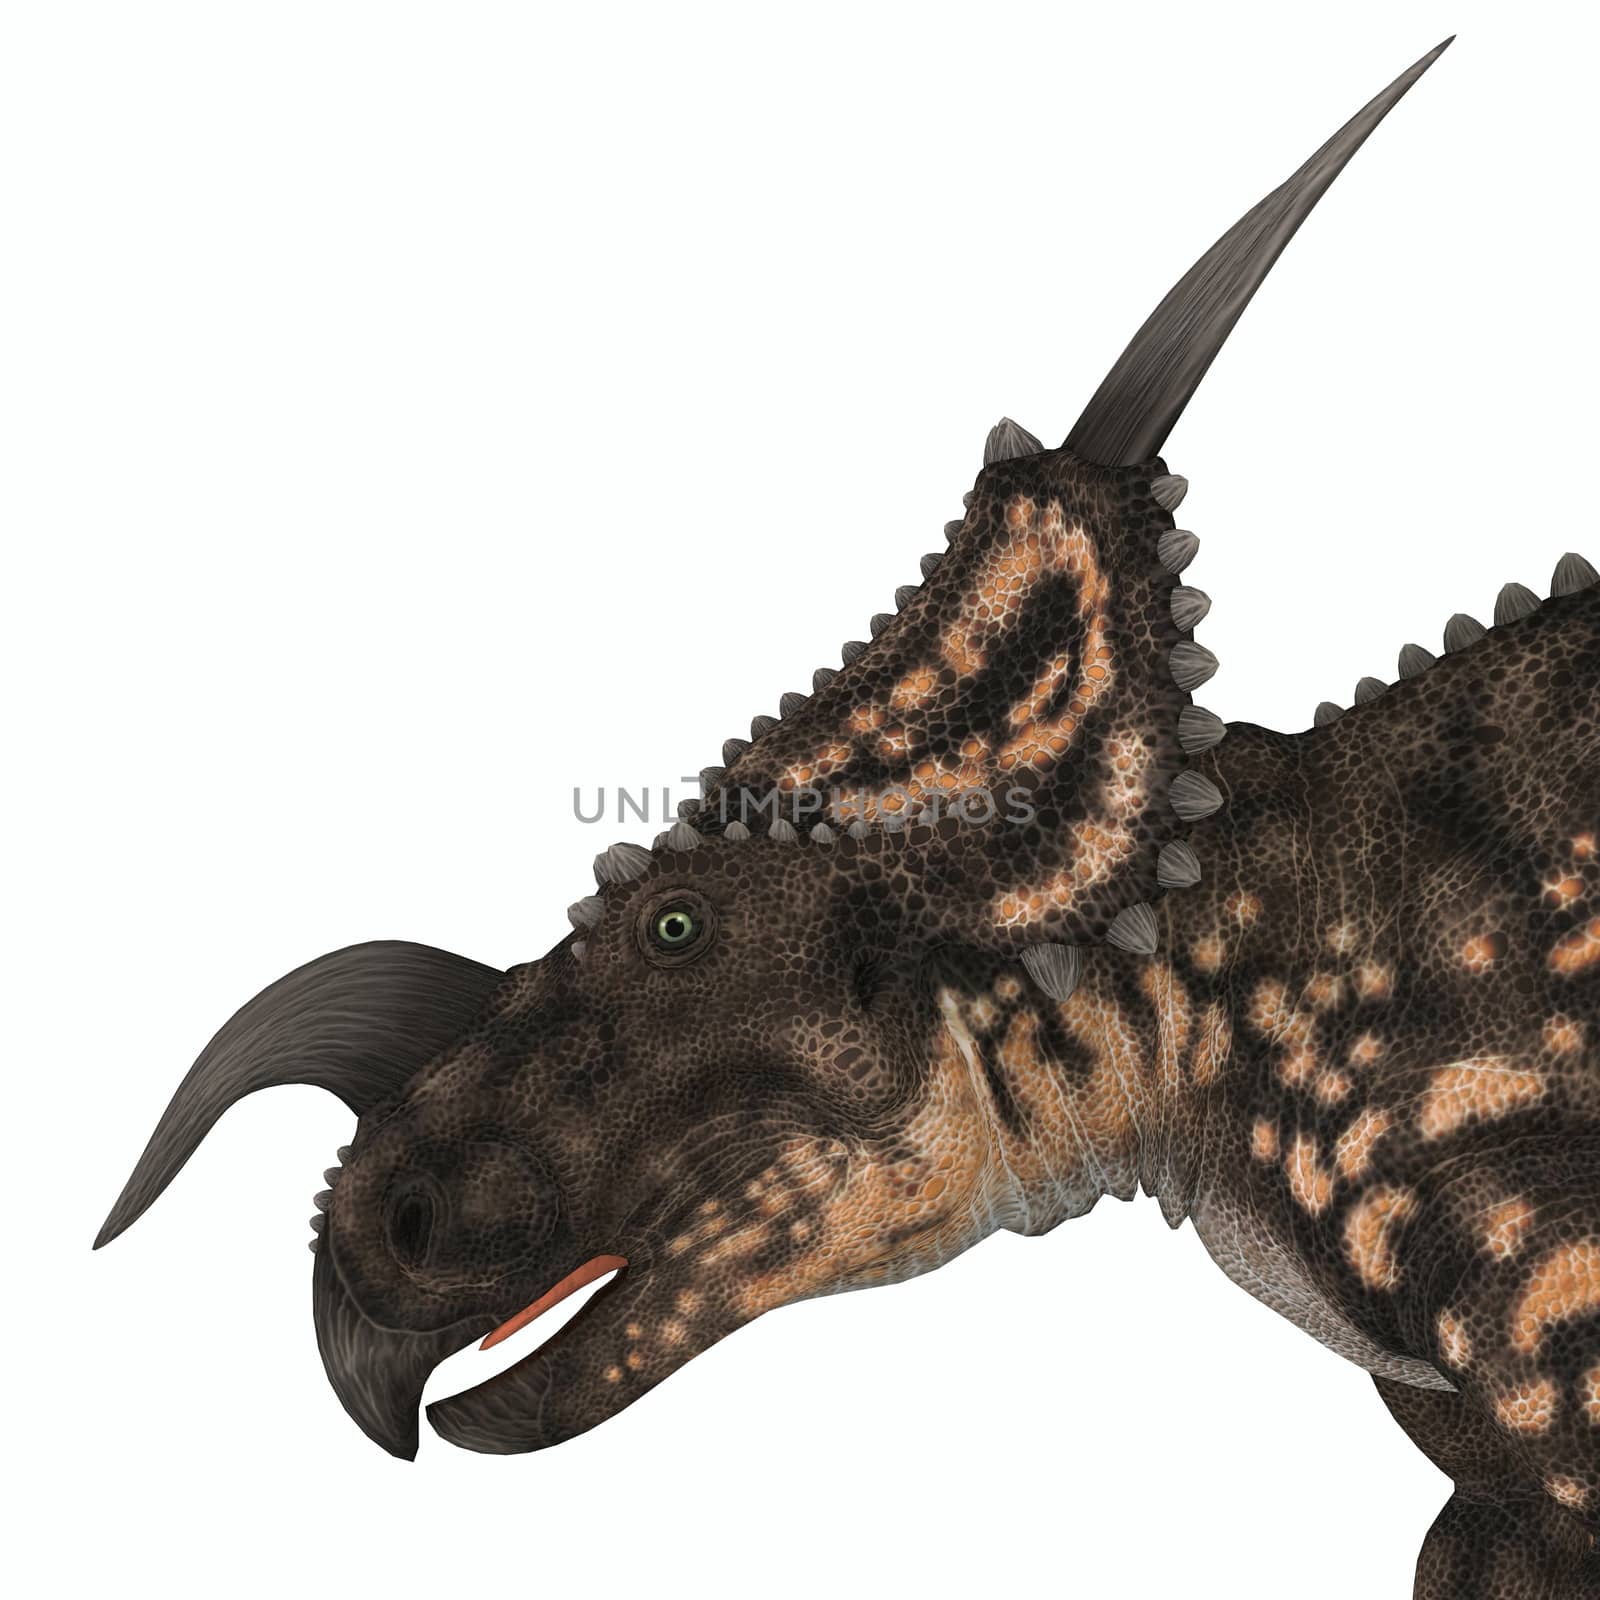 Einiosaurus Dinosaur Head by Catmando